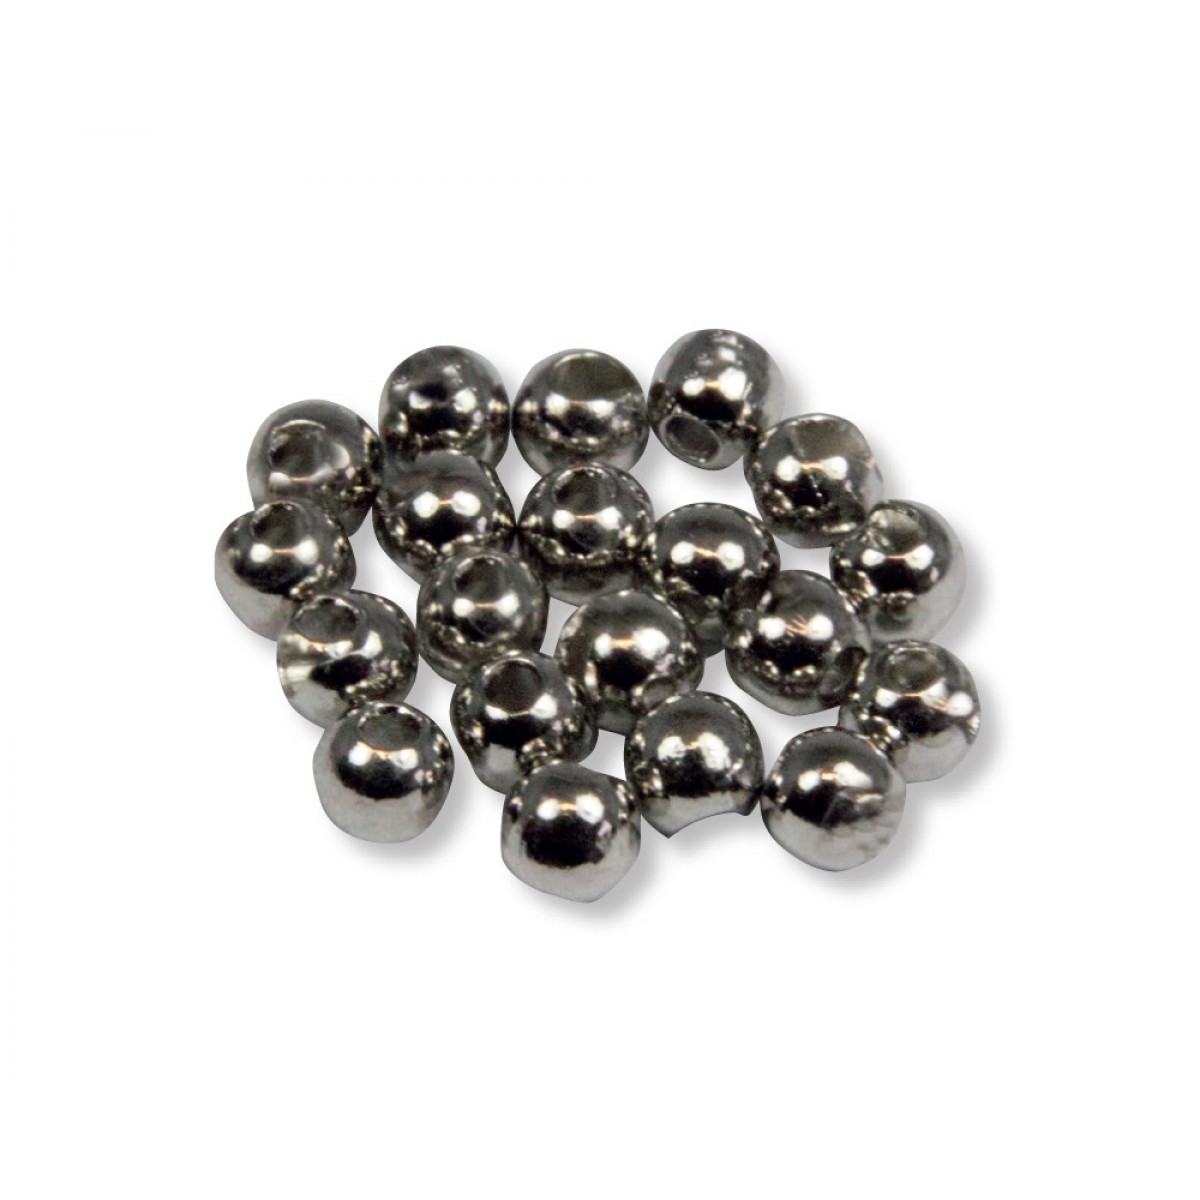 Tungsten Perlen (silber) Durchmesser: 2.8 mm